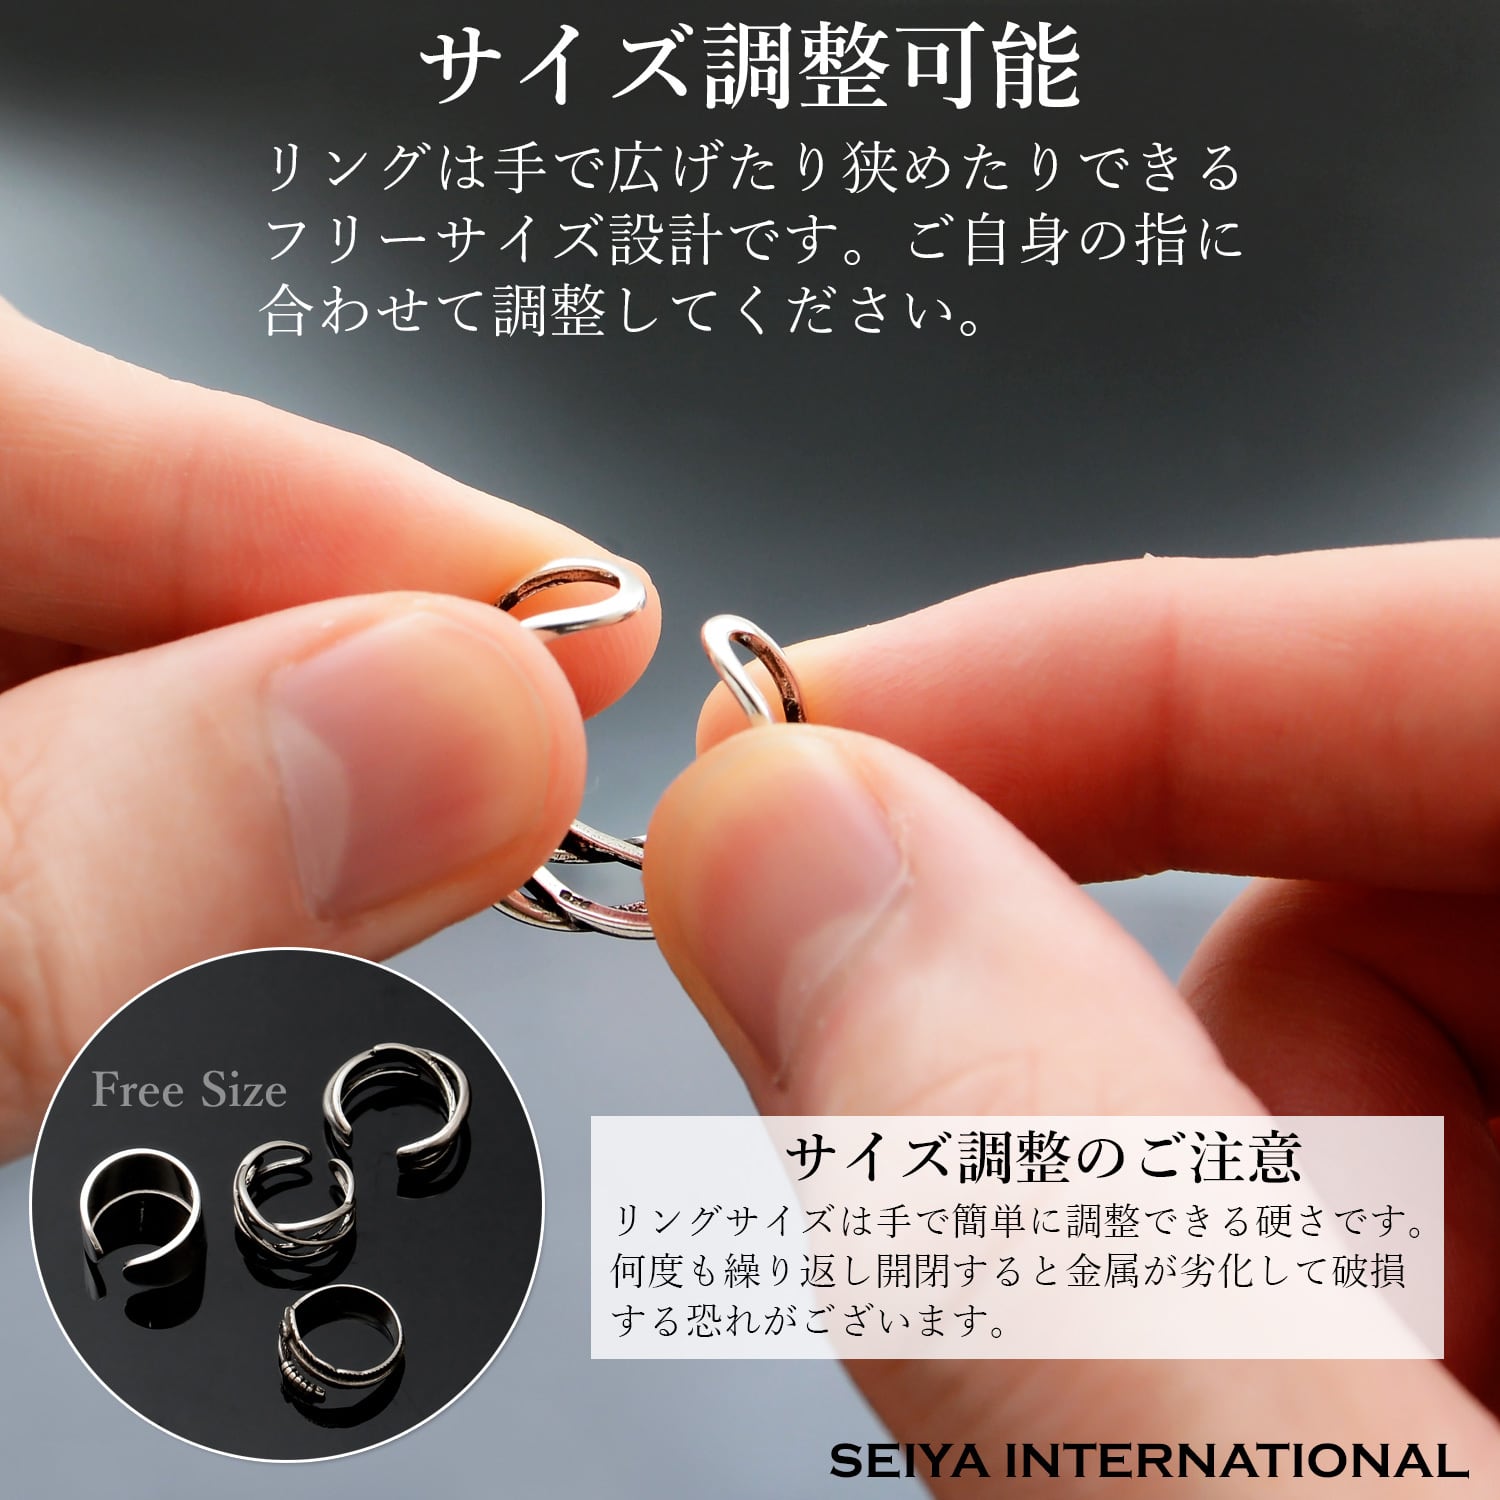 指輪 メンズ リング シルバーリング フリーサイズ(3連リング) SEIYA INTERNATIONAL